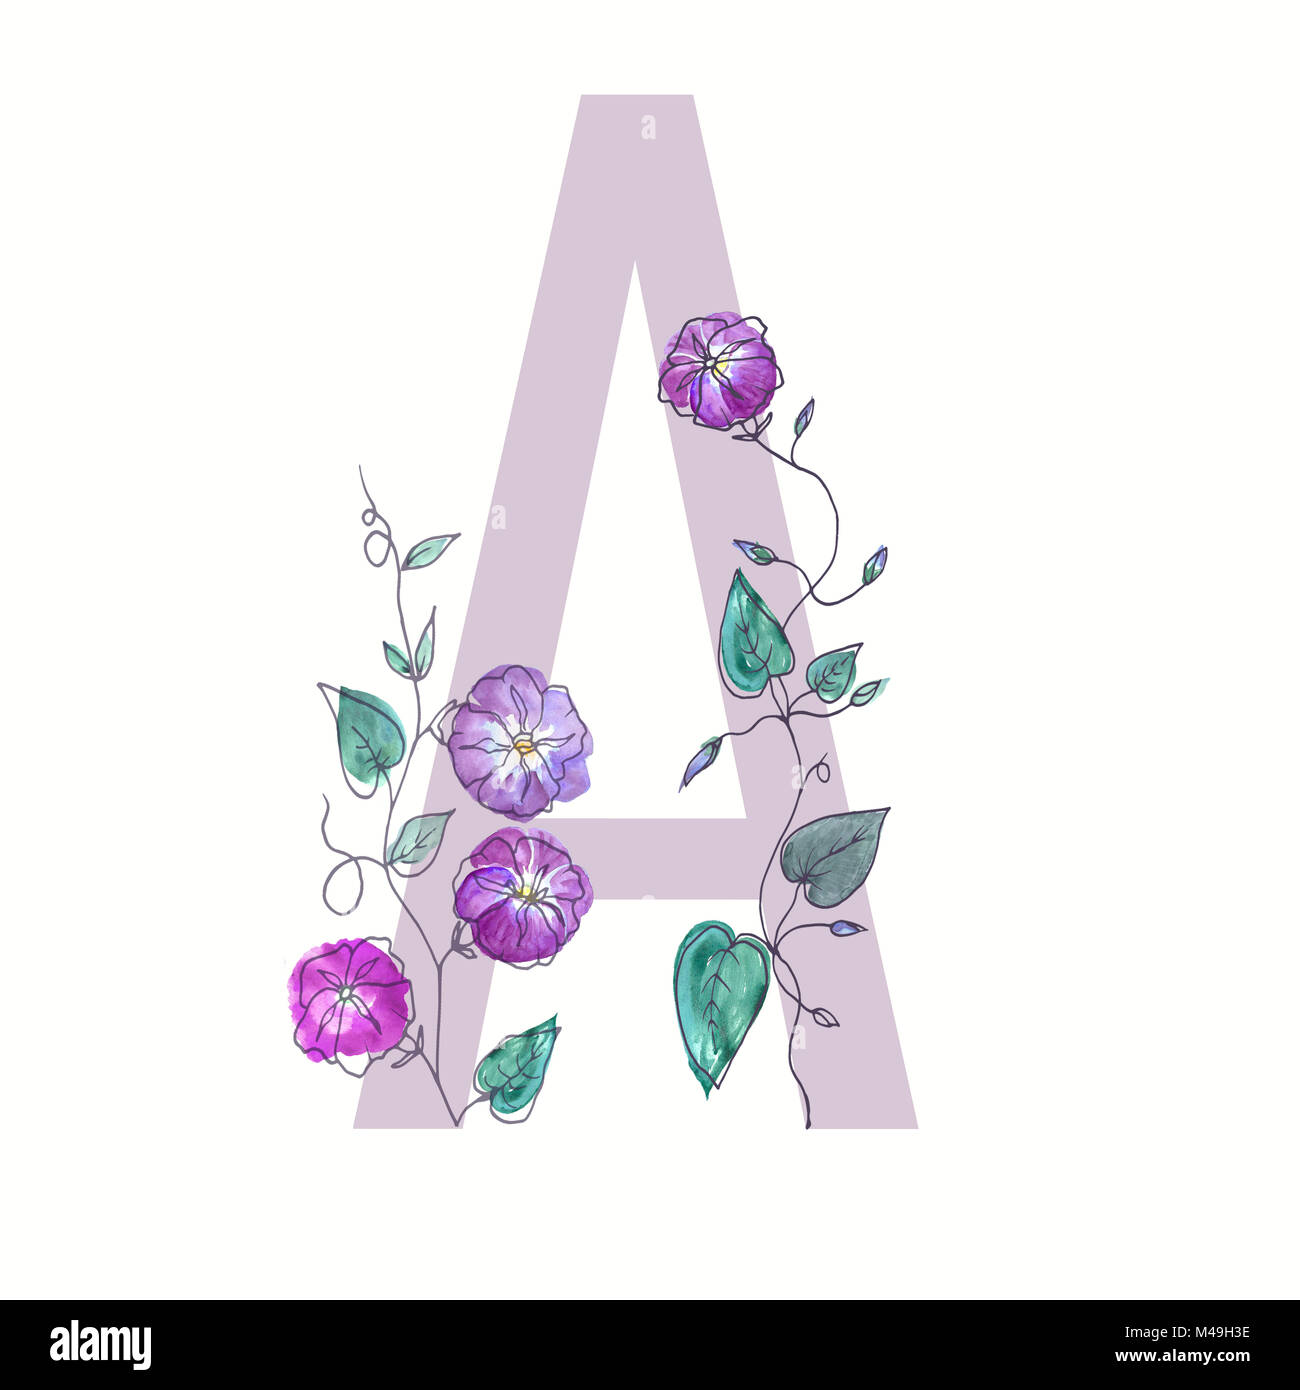 La letra mayúscula del alfabeto está decorado con flores rizadas. Acuarela  Ilustración botánica de plantas. Imagen aislada de esbozadas flores  Fotografía de stock - Alamy